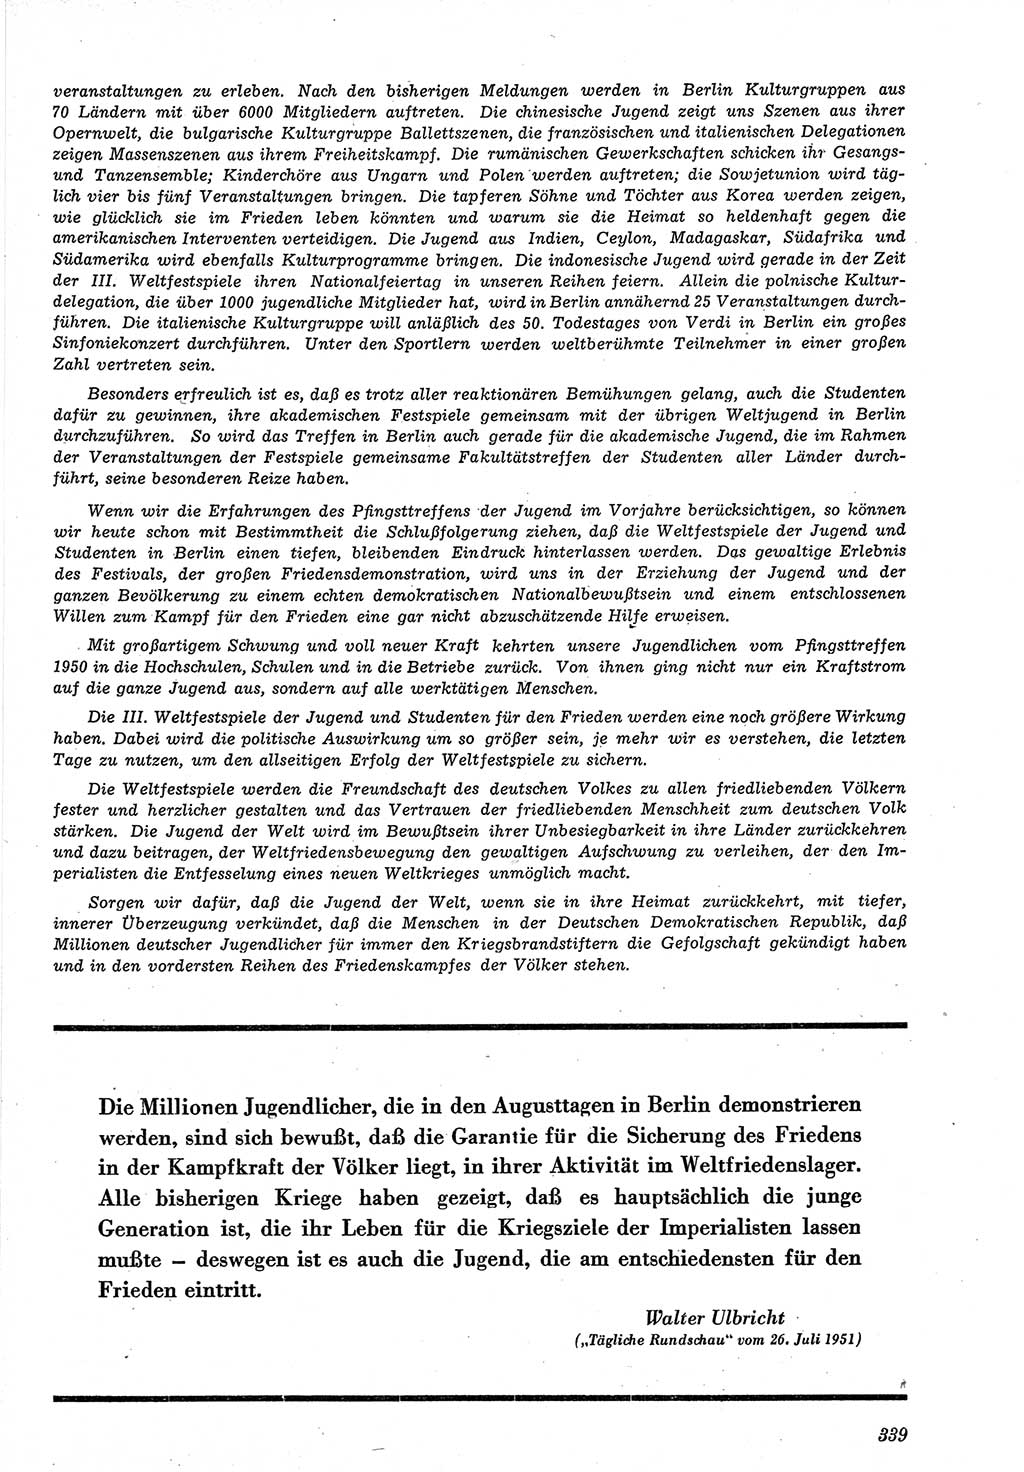 Neue Justiz (NJ), Zeitschrift für Recht und Rechtswissenschaft [Deutsche Demokratische Republik (DDR)], 5. Jahrgang 1951, Seite 339 (NJ DDR 1951, S. 339)